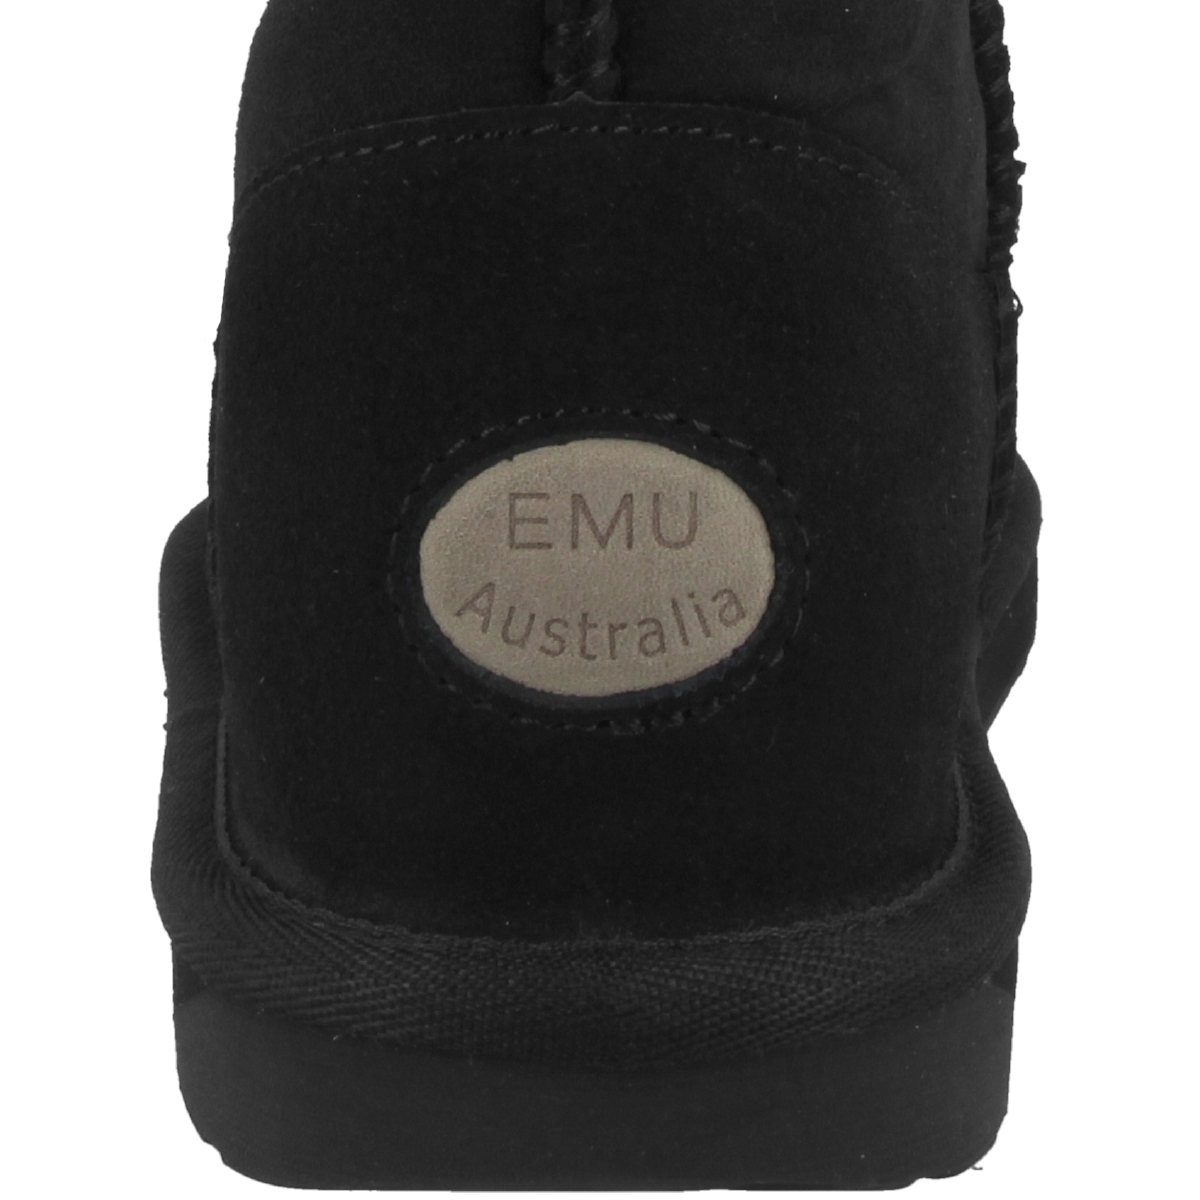 EMU Australia Stinger Mini Boots